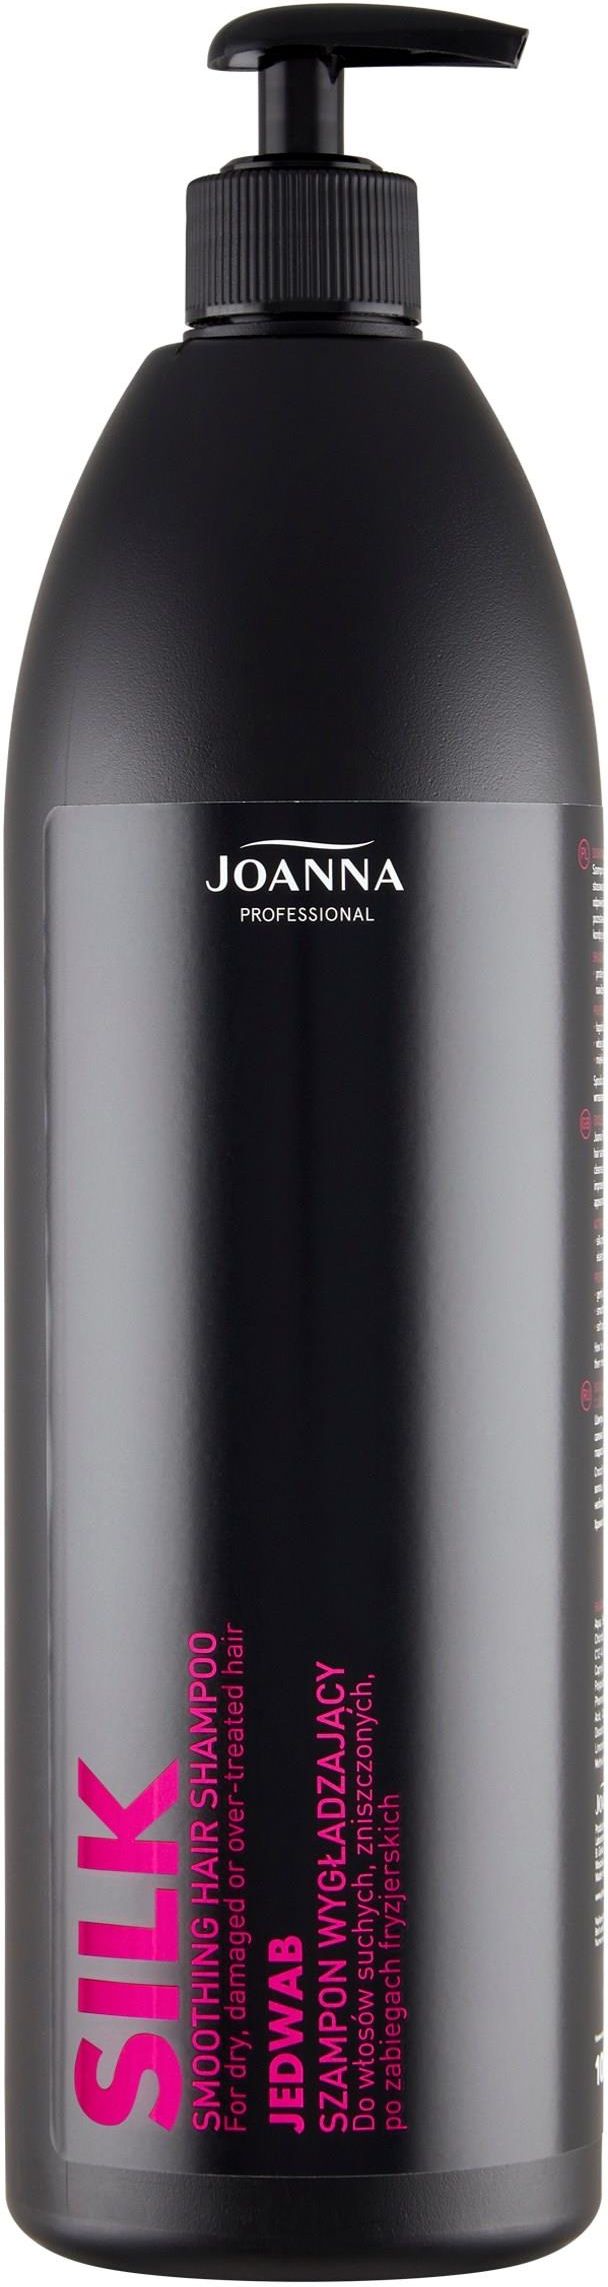 joanna professional szampon z keratyną opinie